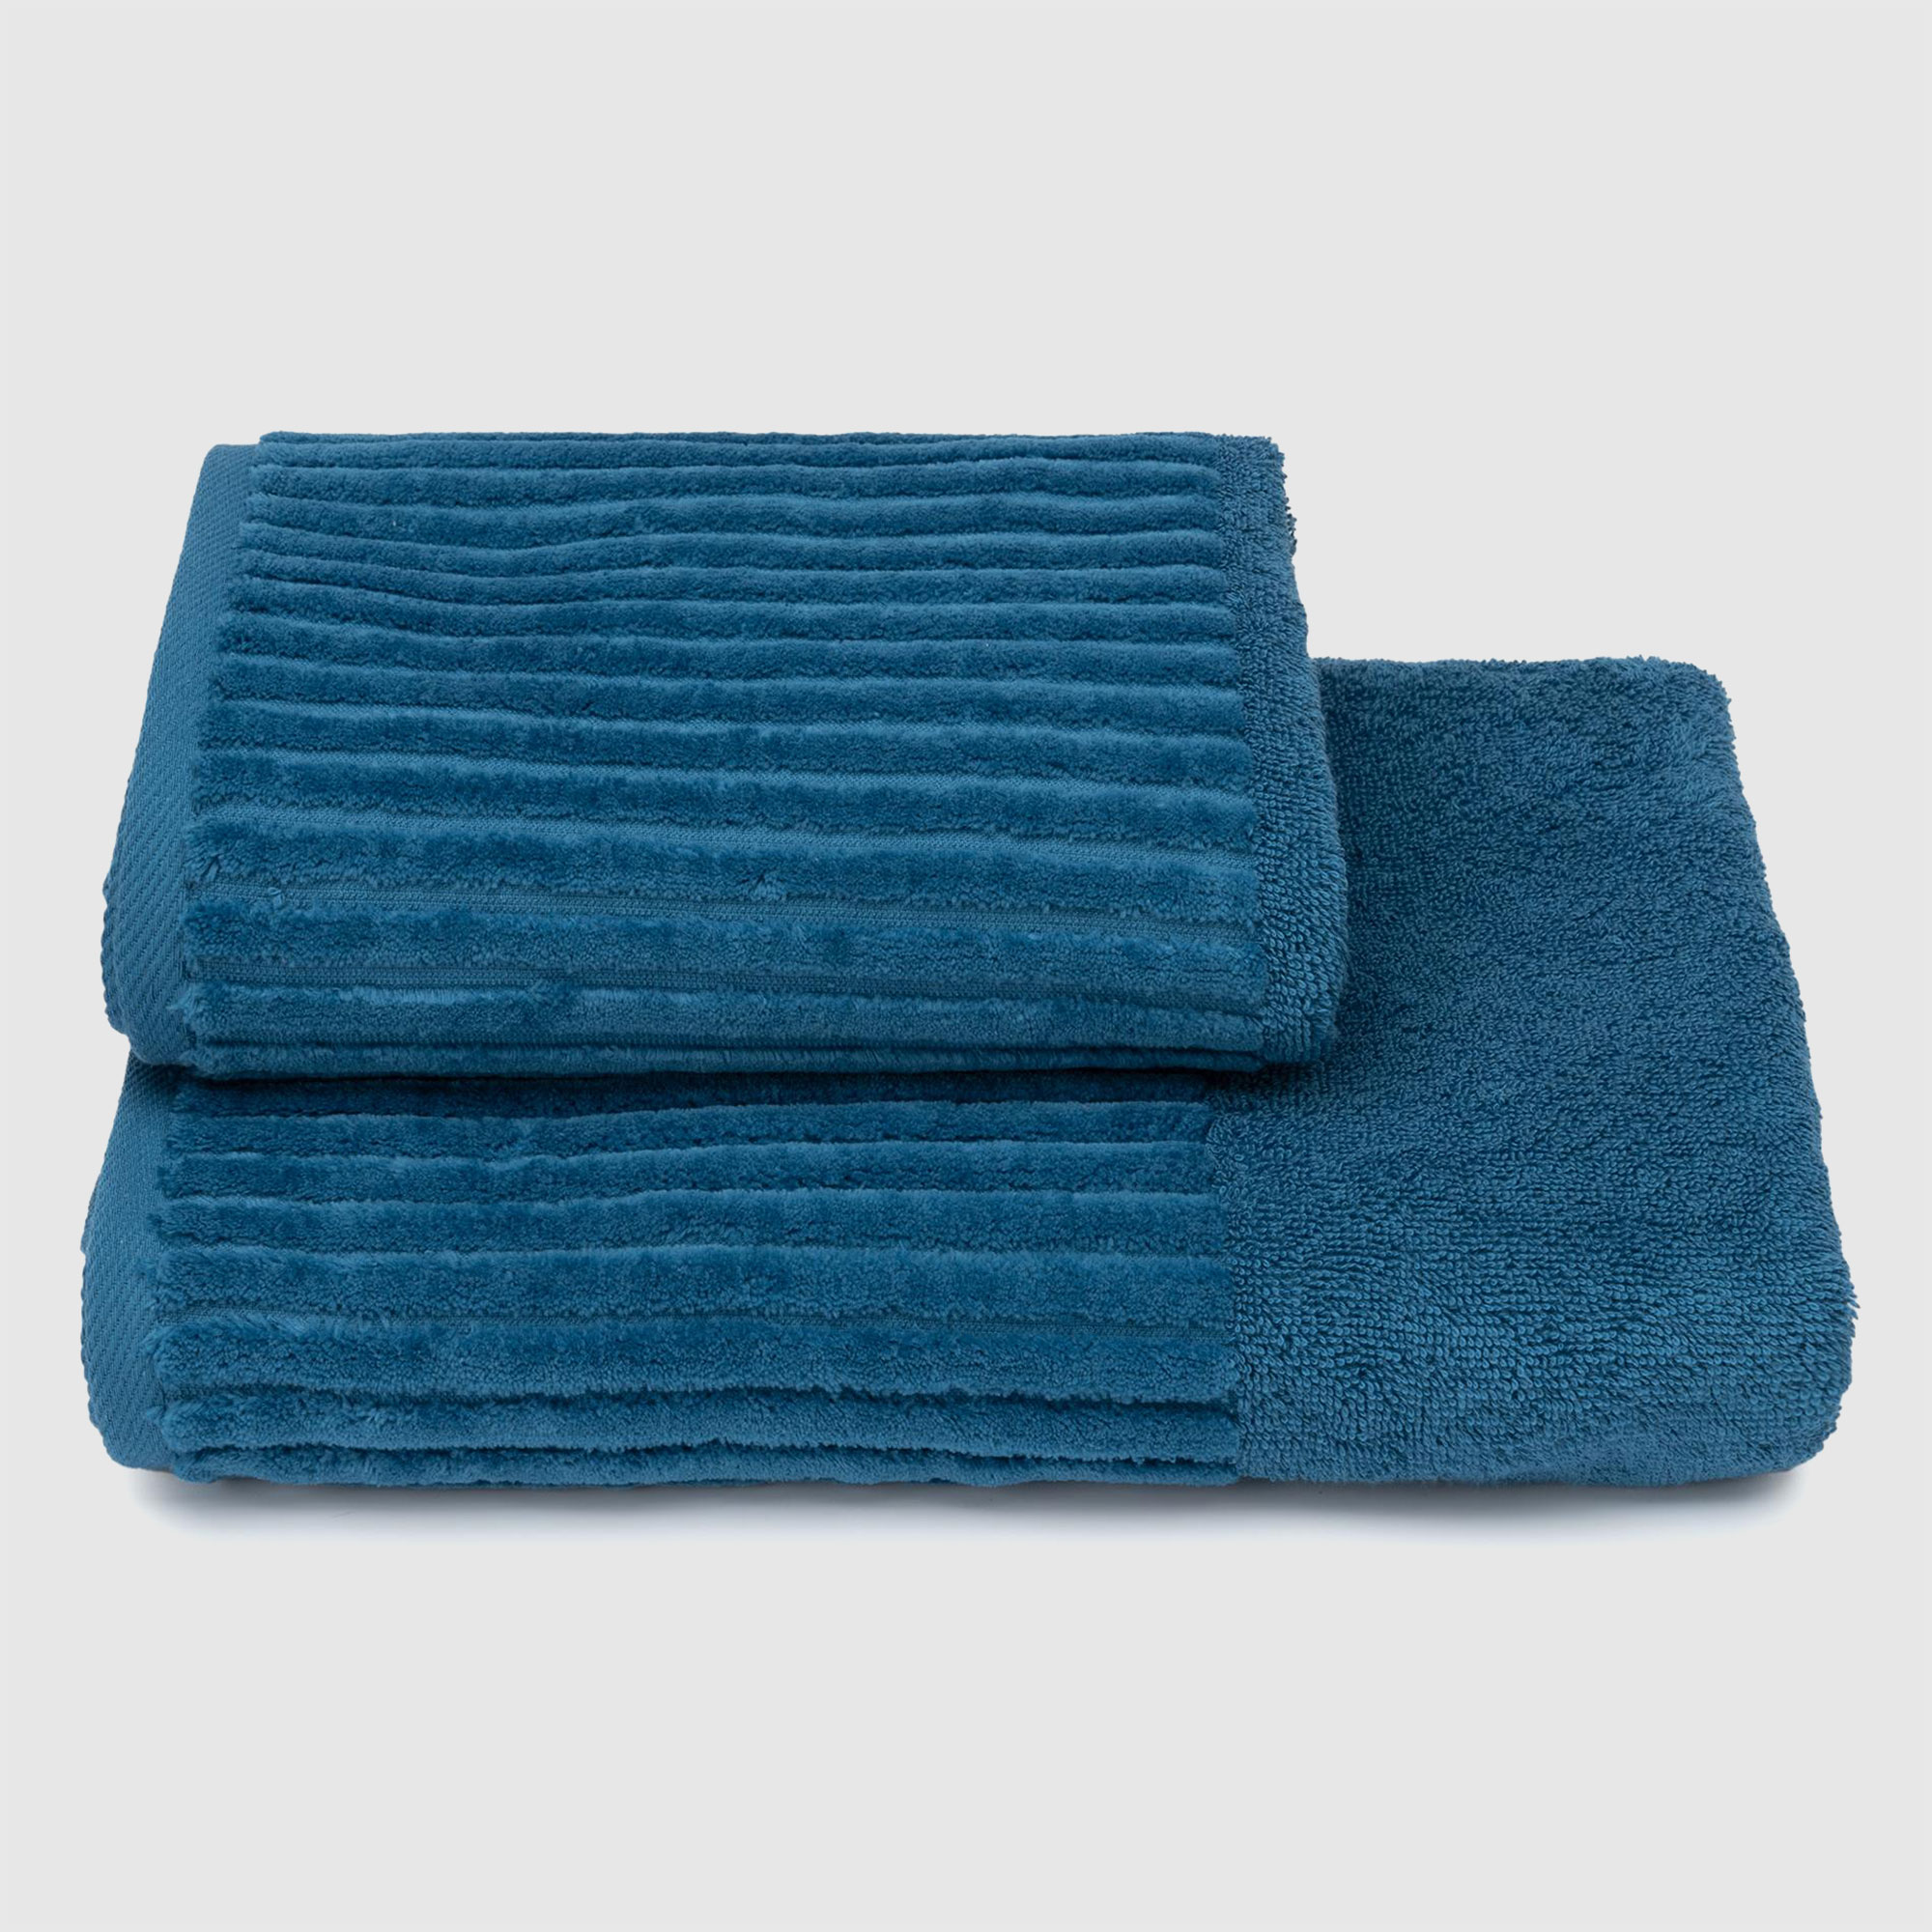 Махровое полотенце Cleanelly Basic Cascata синее 50х90 см полотенце классик темно синий р 50х90